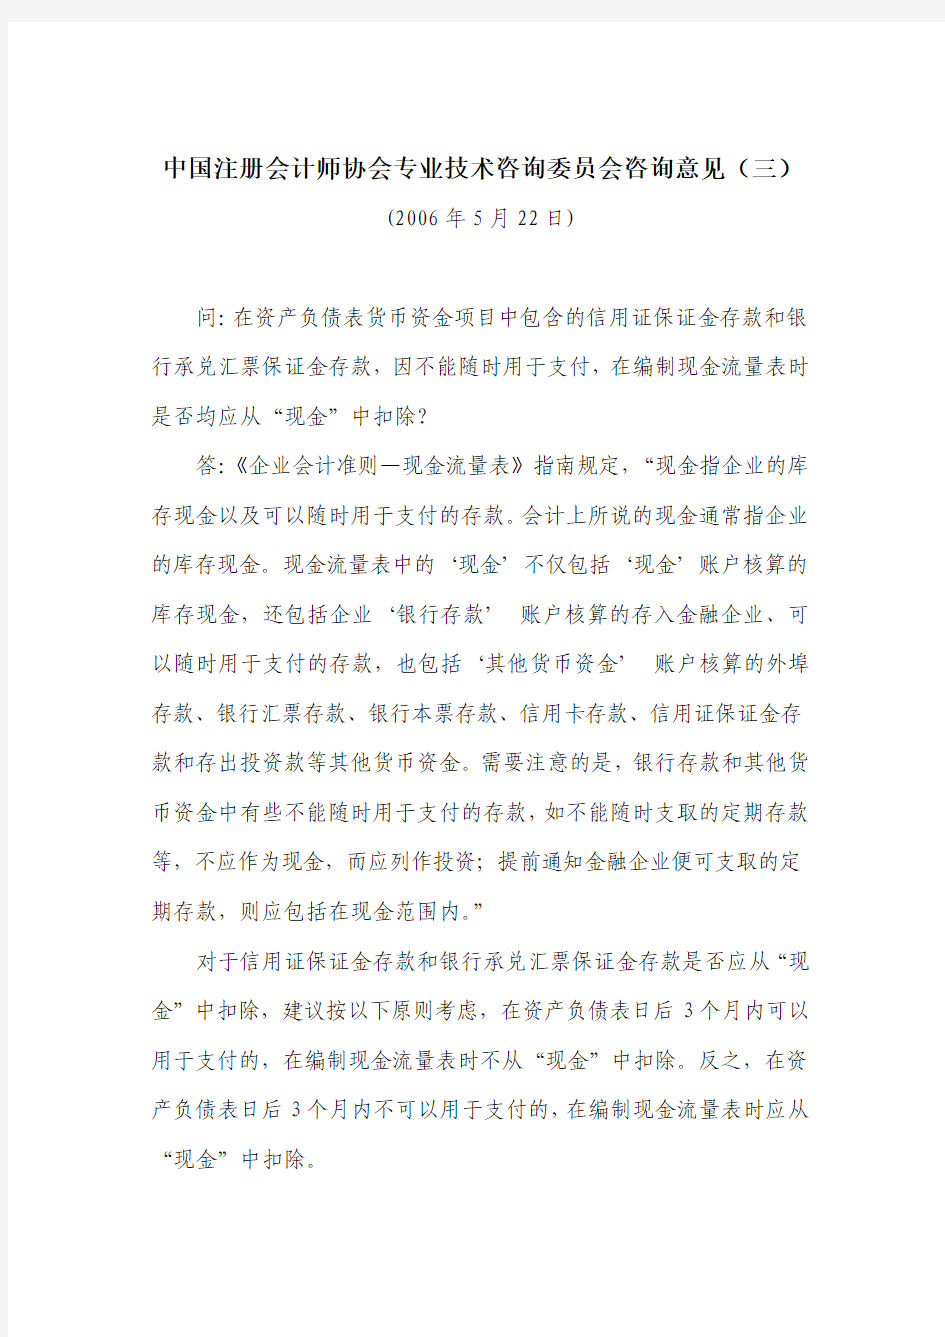 中国注册会计师协会专业技术咨询委员会咨询意见(三)